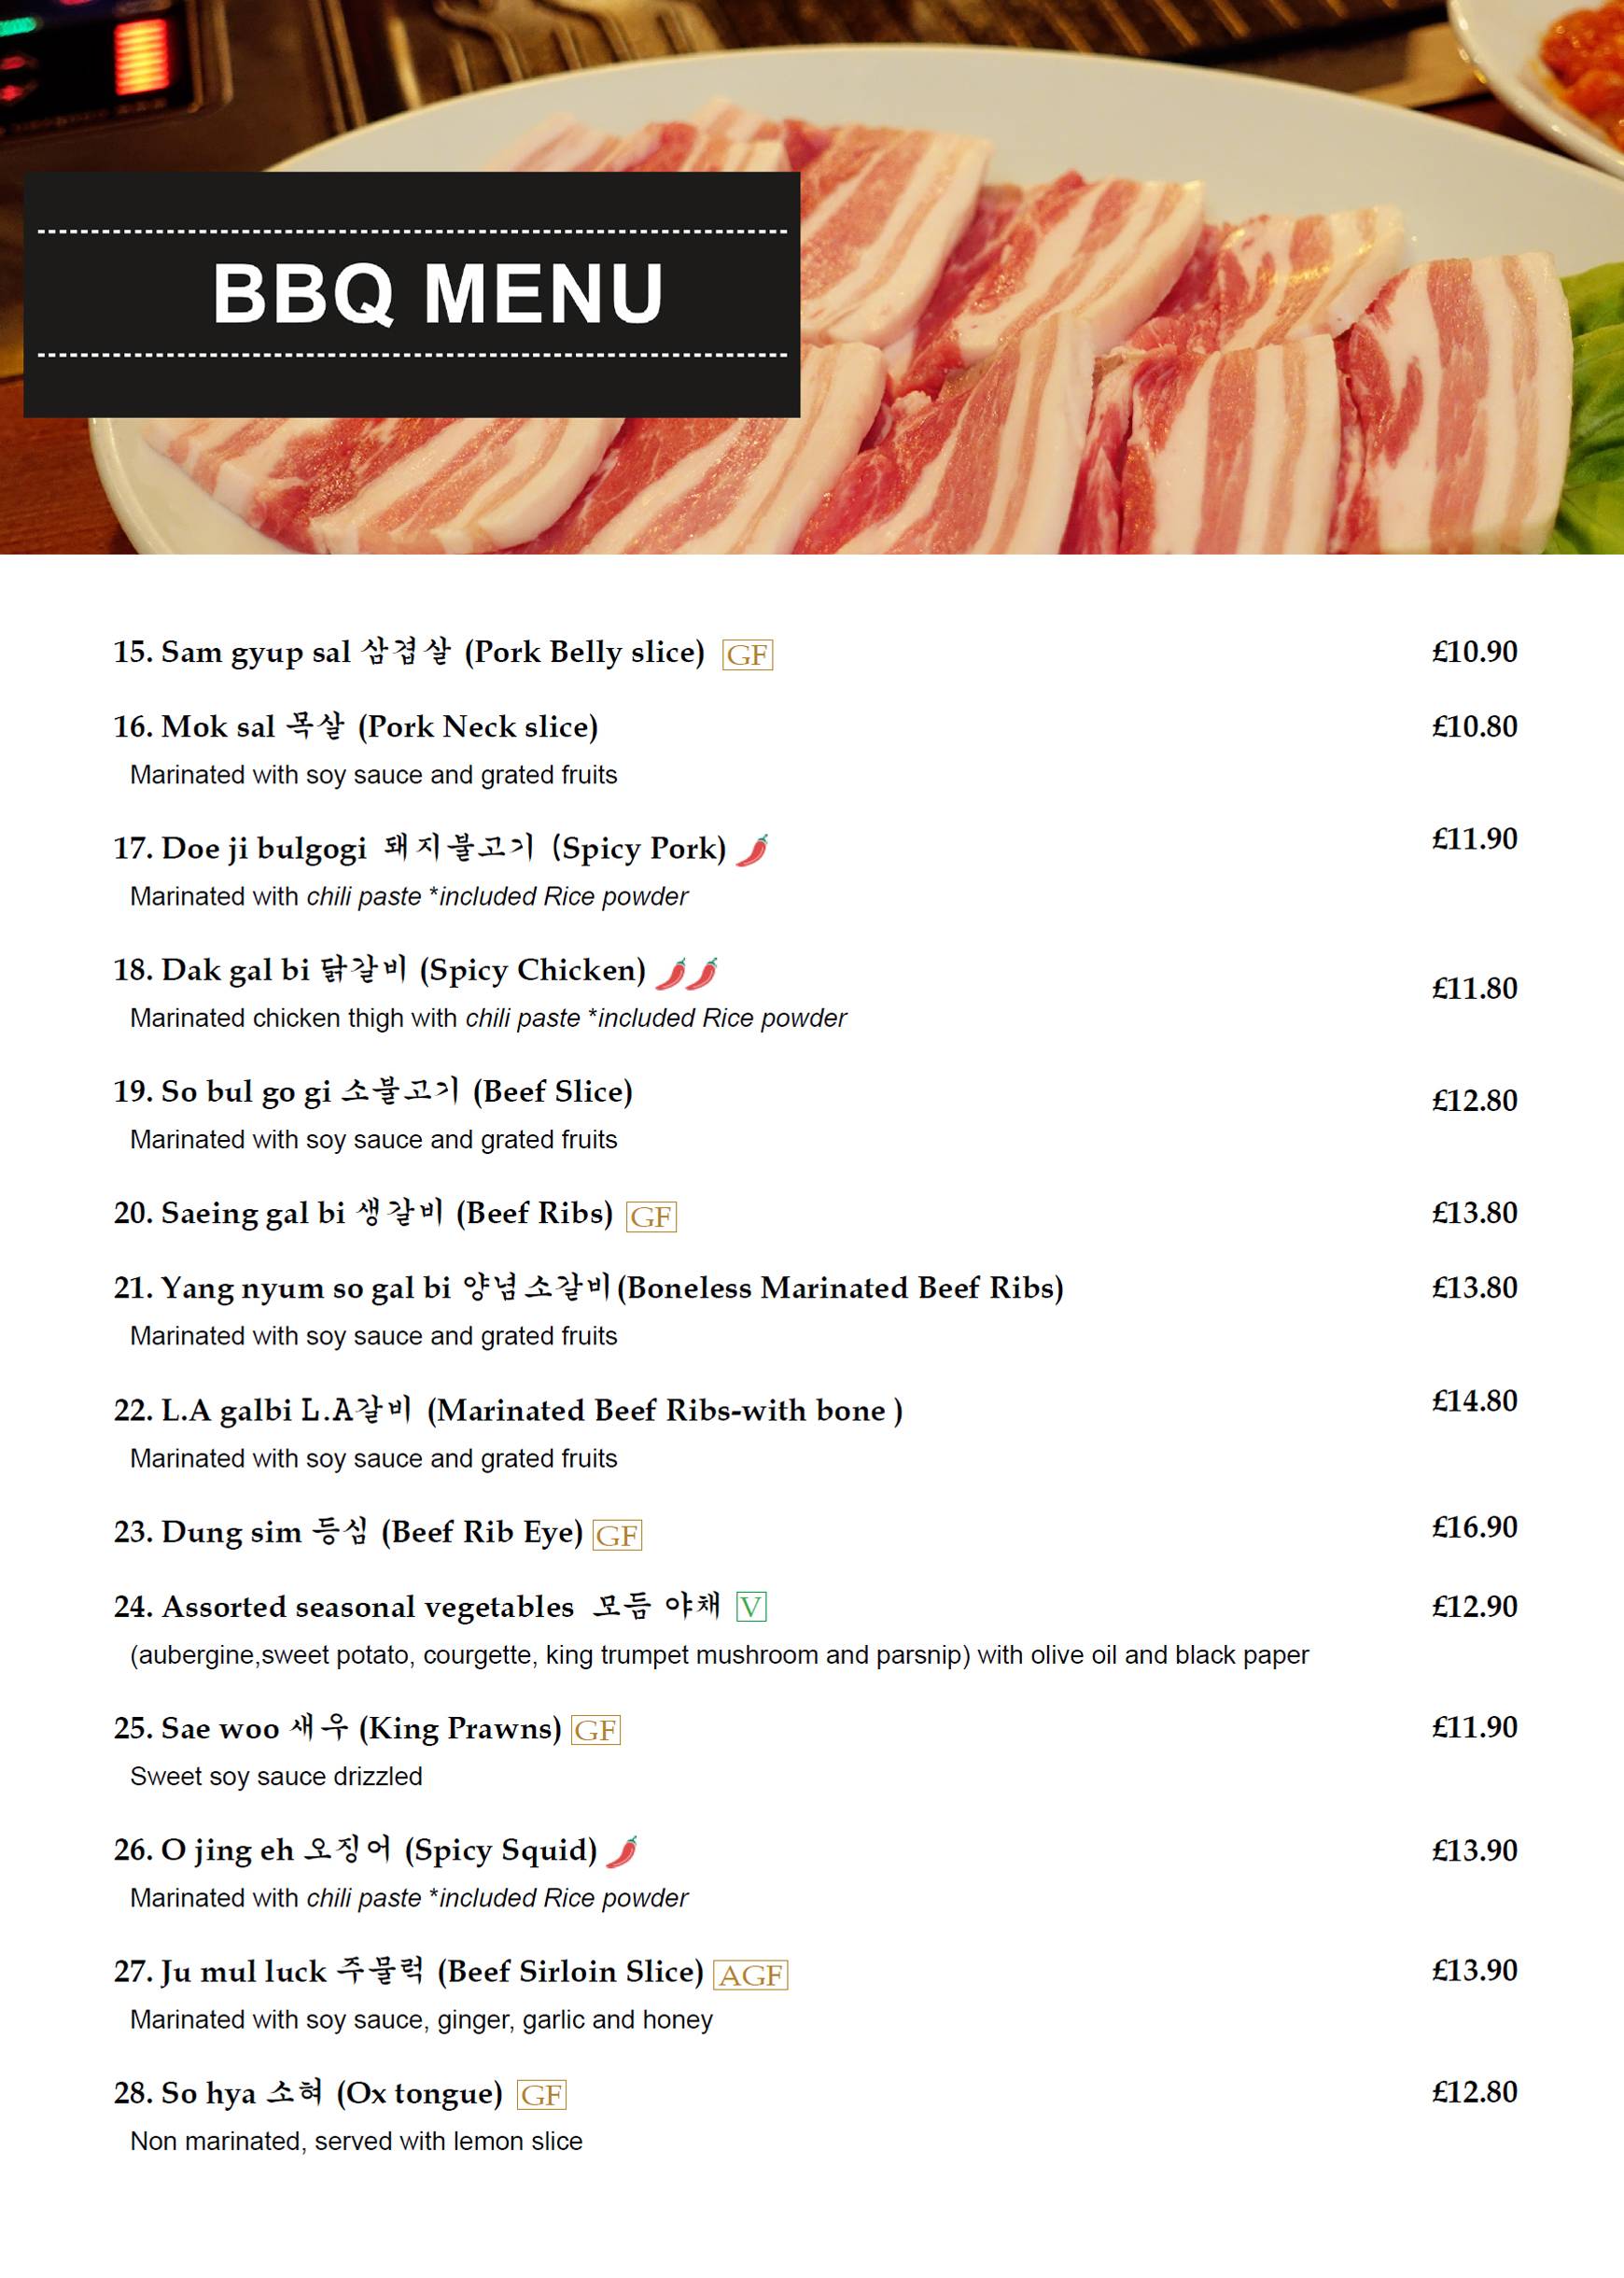 KOREAN BBQ, Edinburgh - 3 Tarvit St, West End - Menu & Prices - Tripadvisor